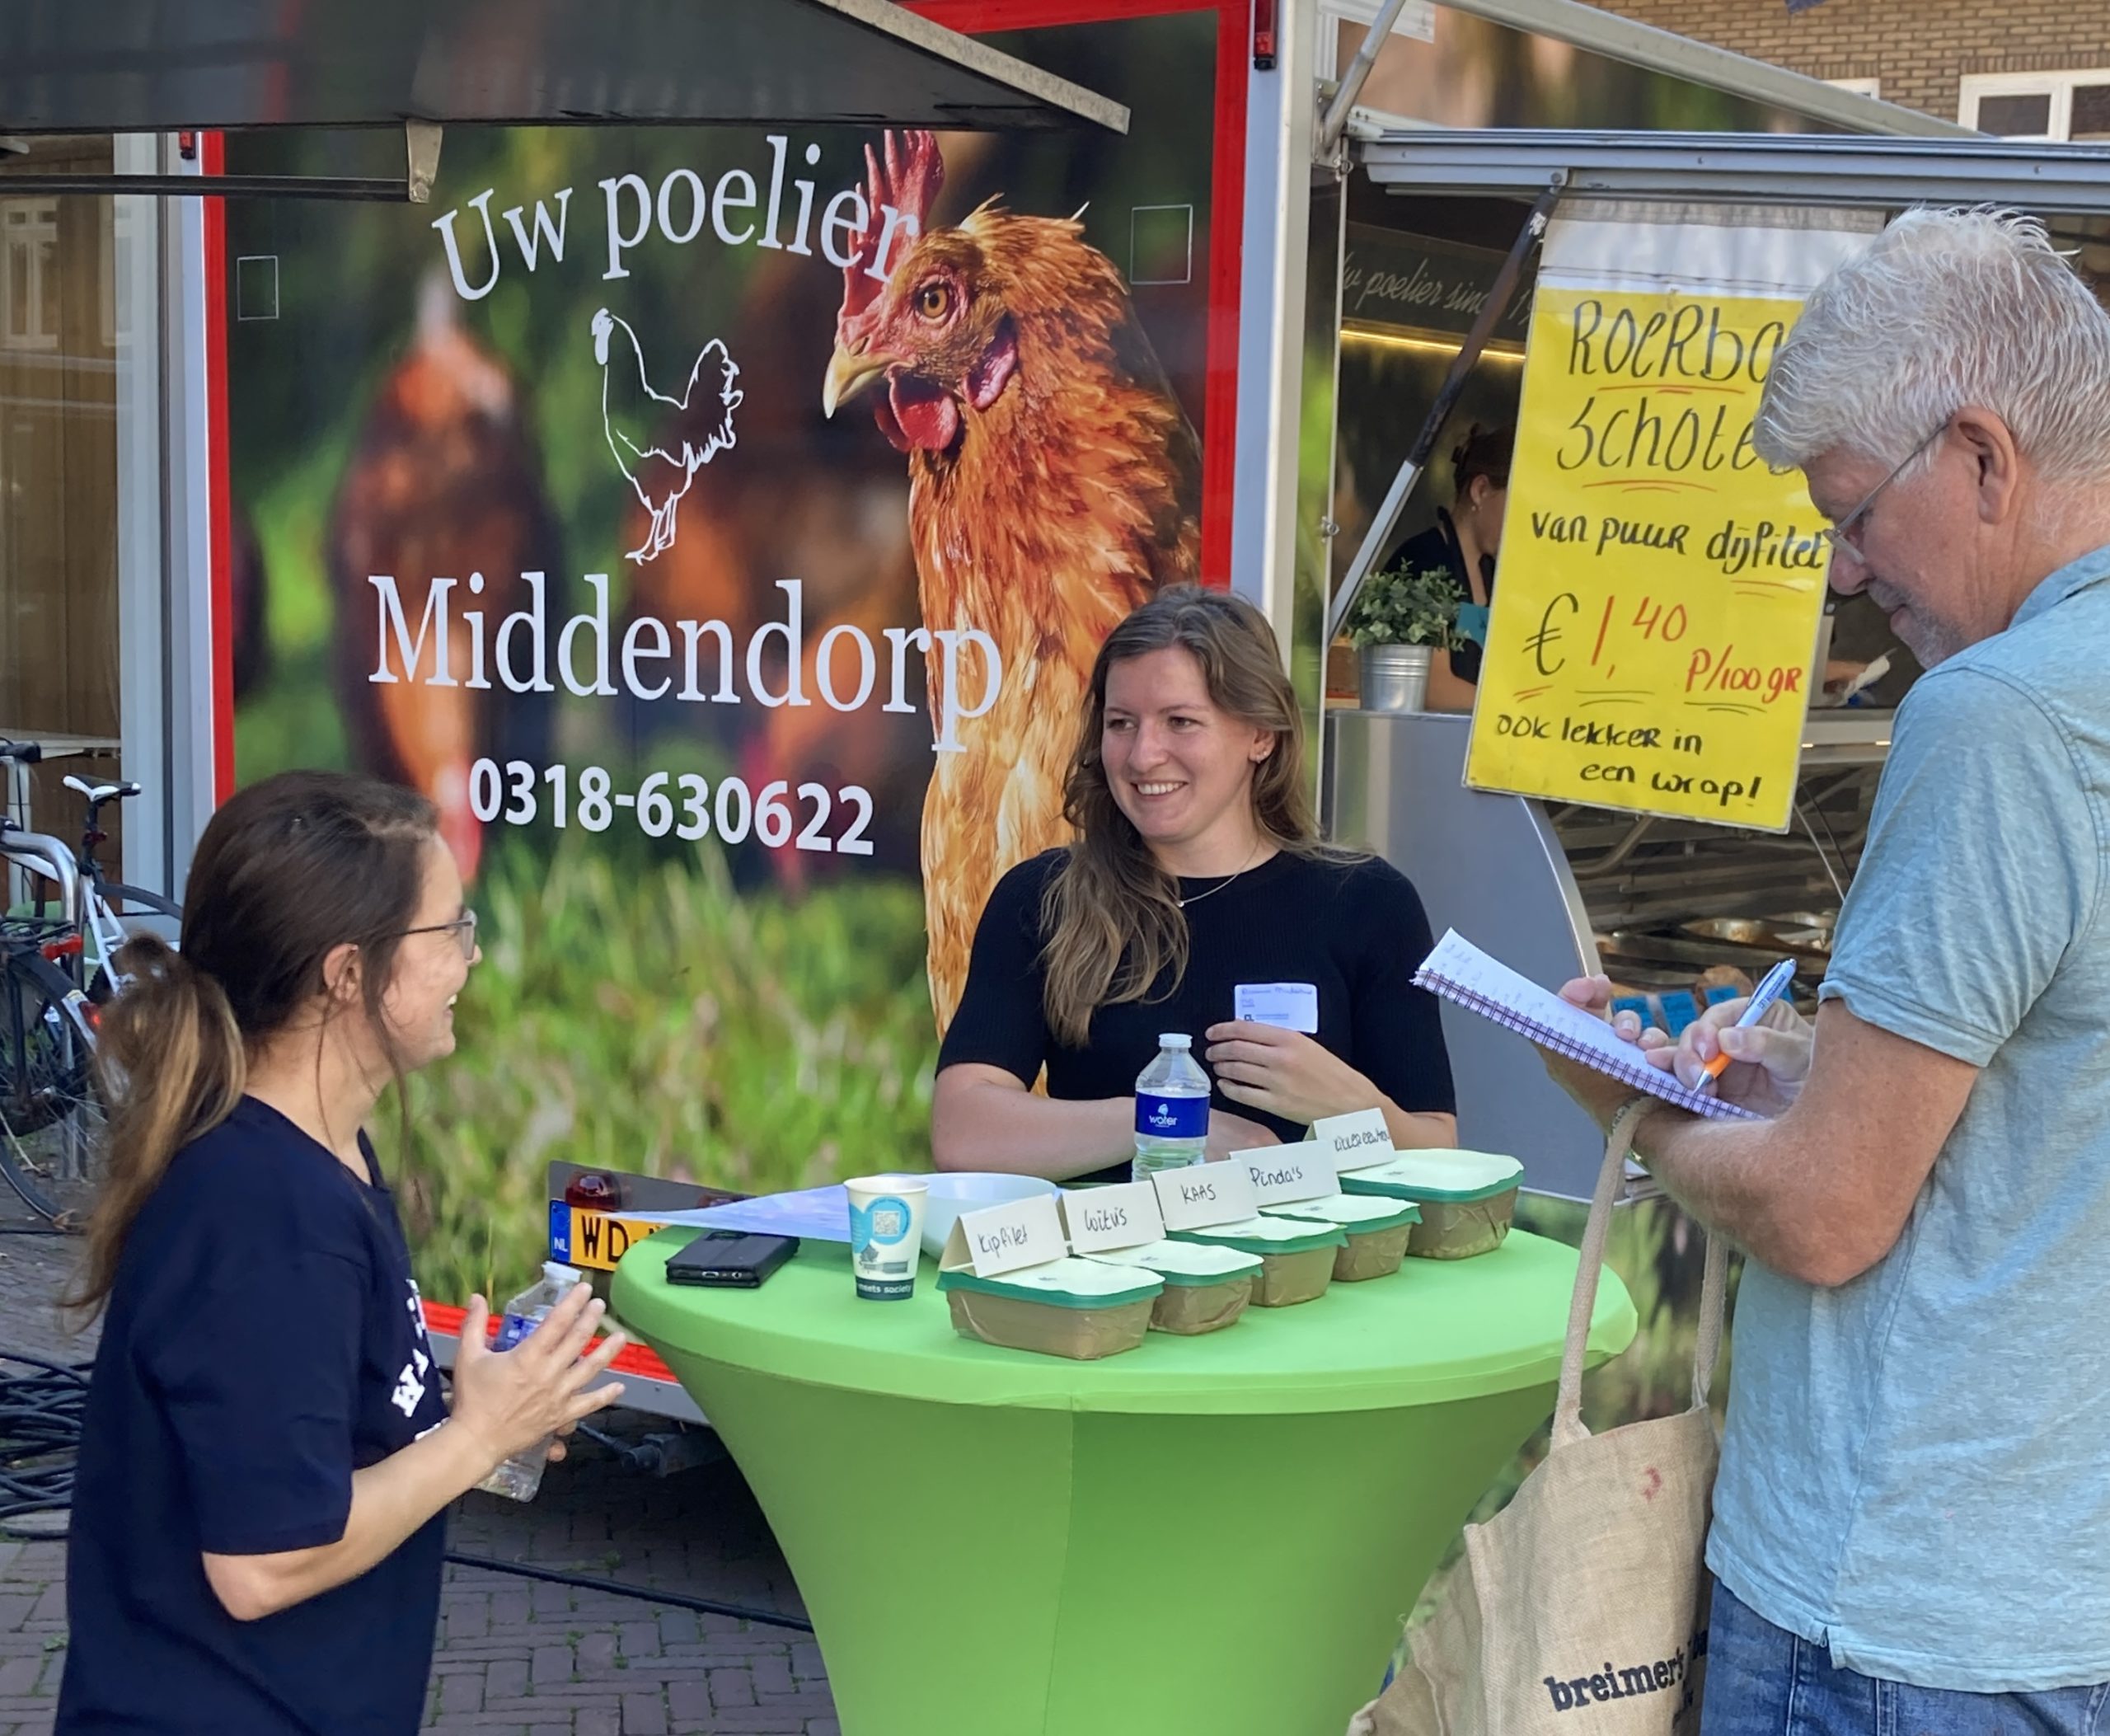 Scientists on Wageningen’s weekly market